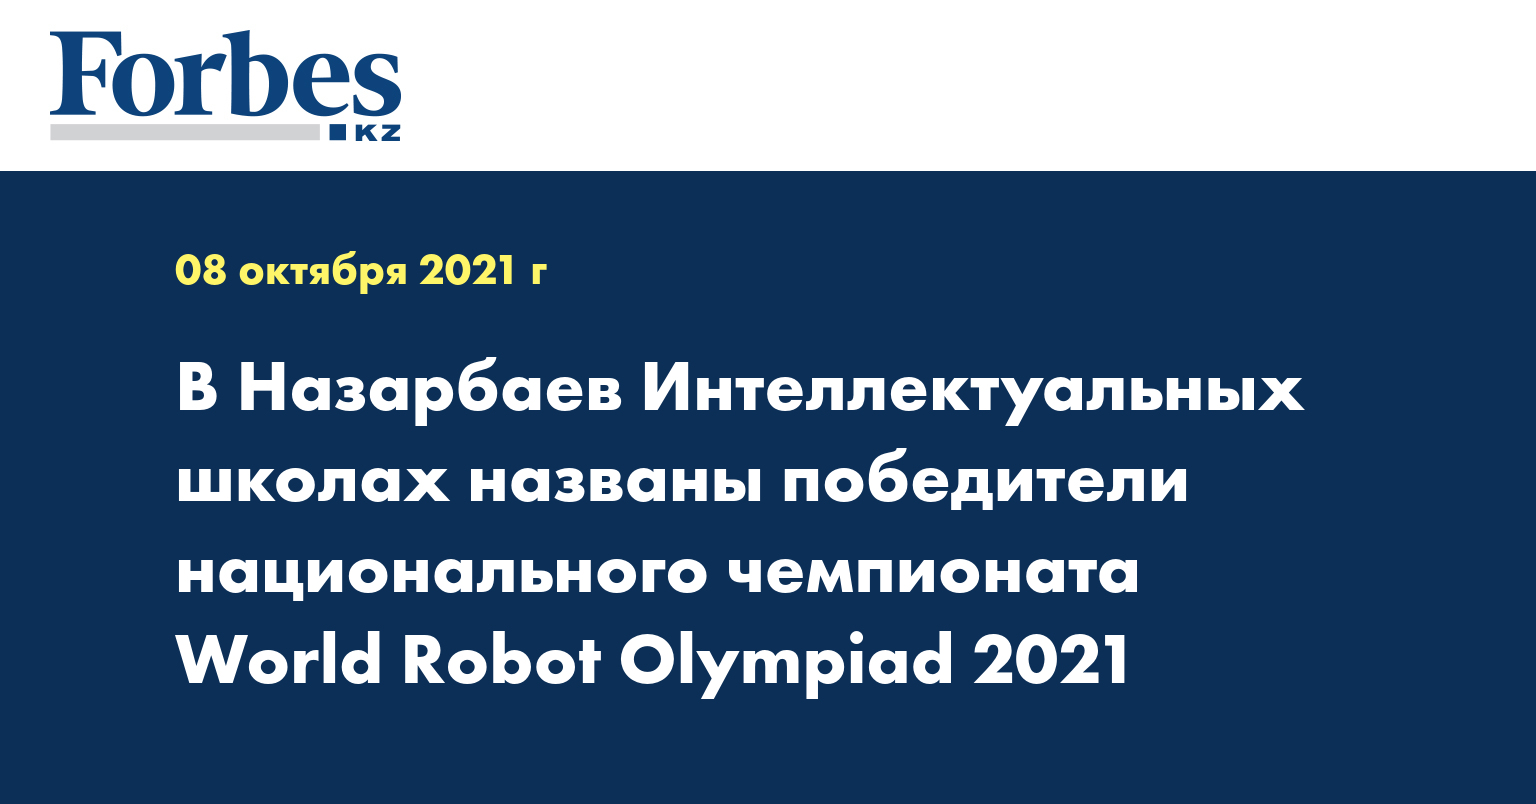 В Назарбаев Интеллектуальных школах названы победители национального чемпионата World Robot Olympiad 2021